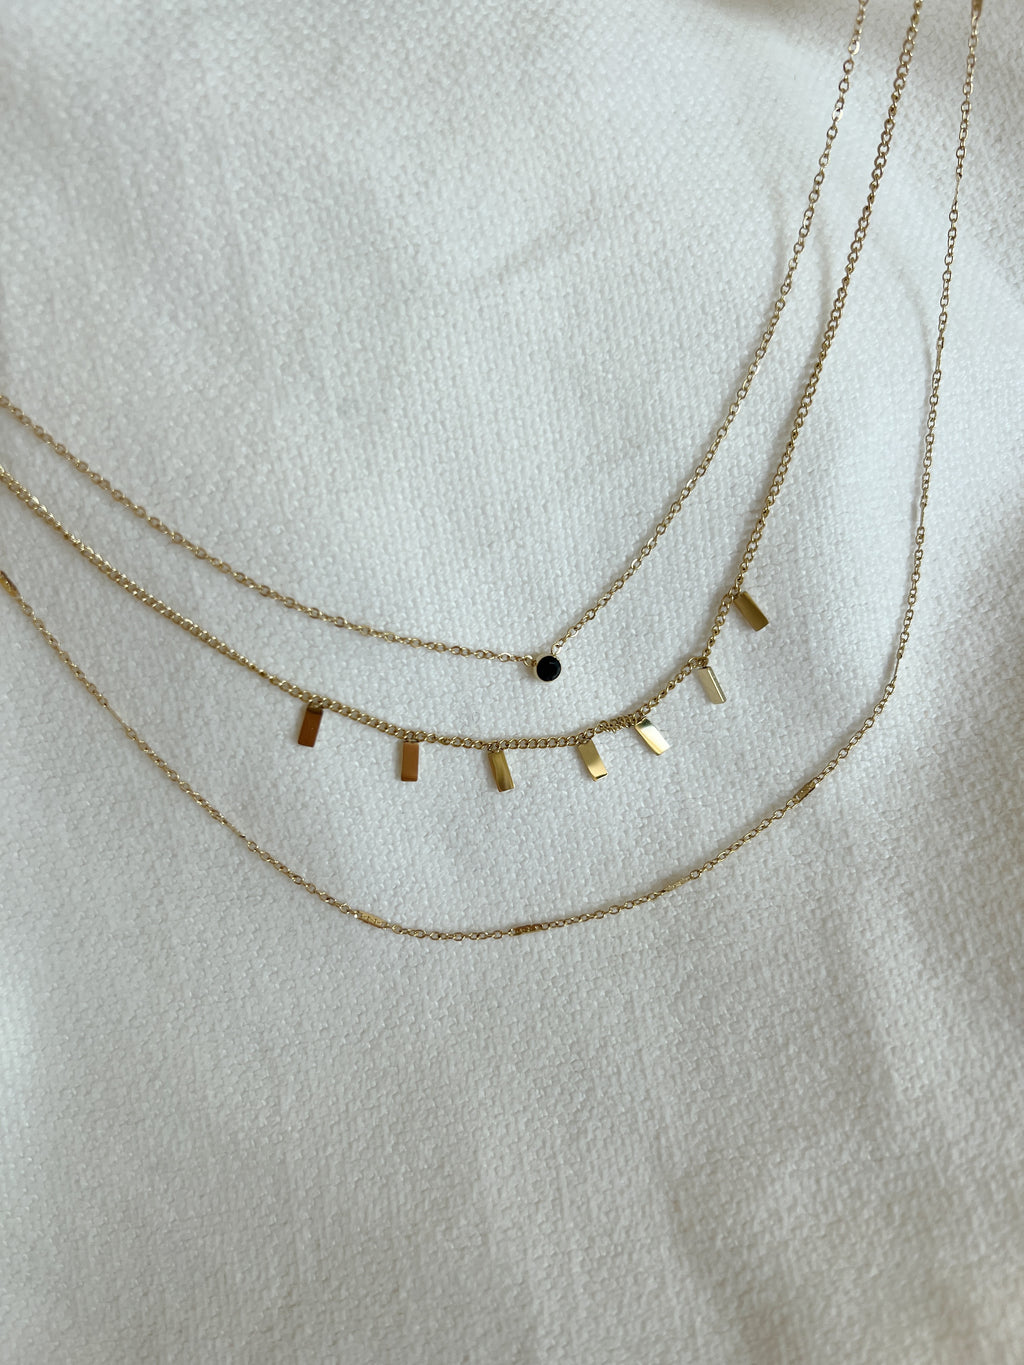 Louve necklace - Golden